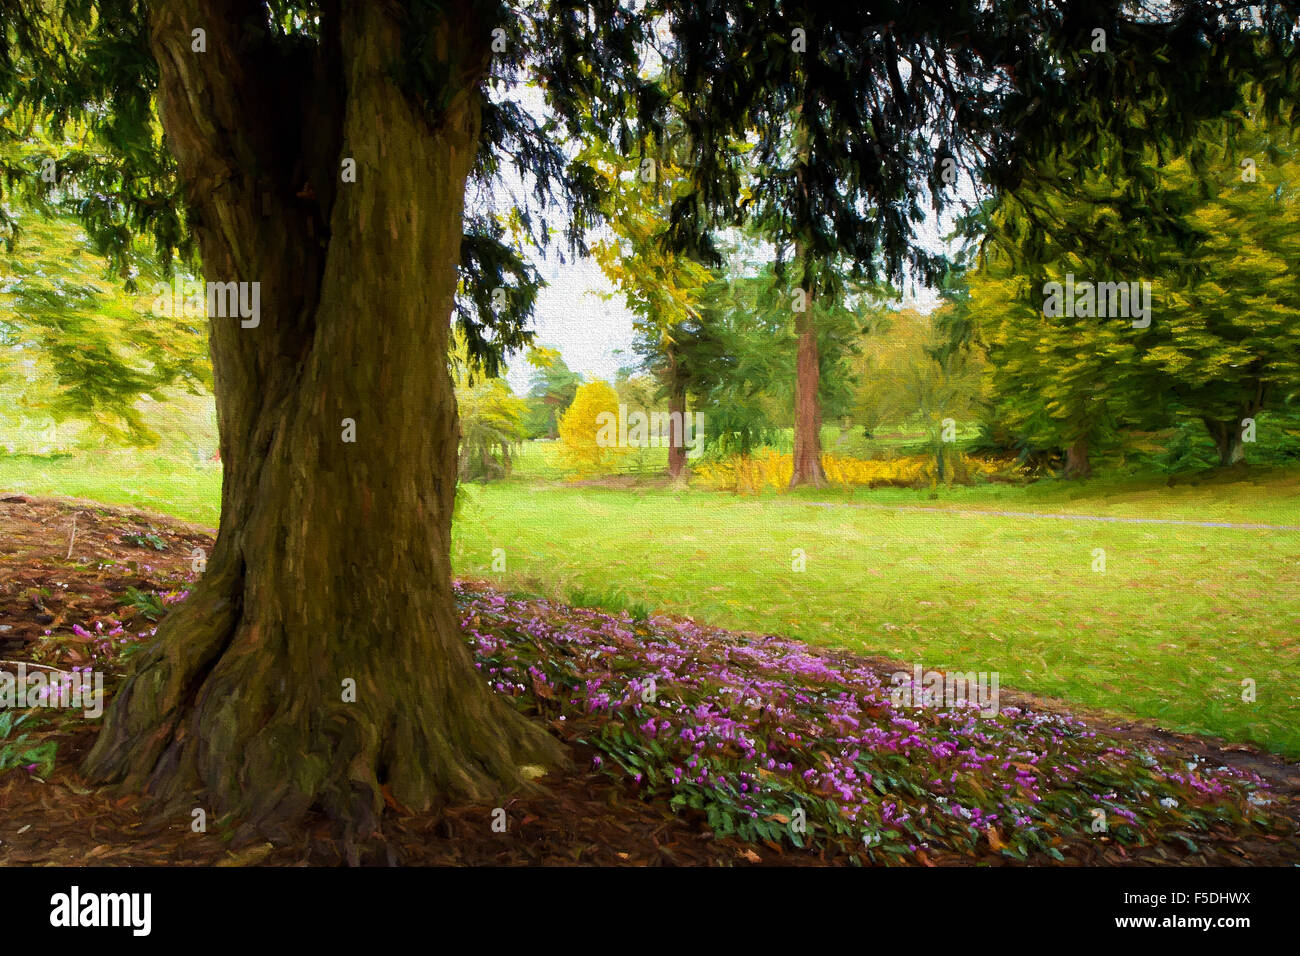 Rosa Blumen unter einem Baum in einem wunderschönen englischen Park Abbildung wie Ölgemälde Stockfoto